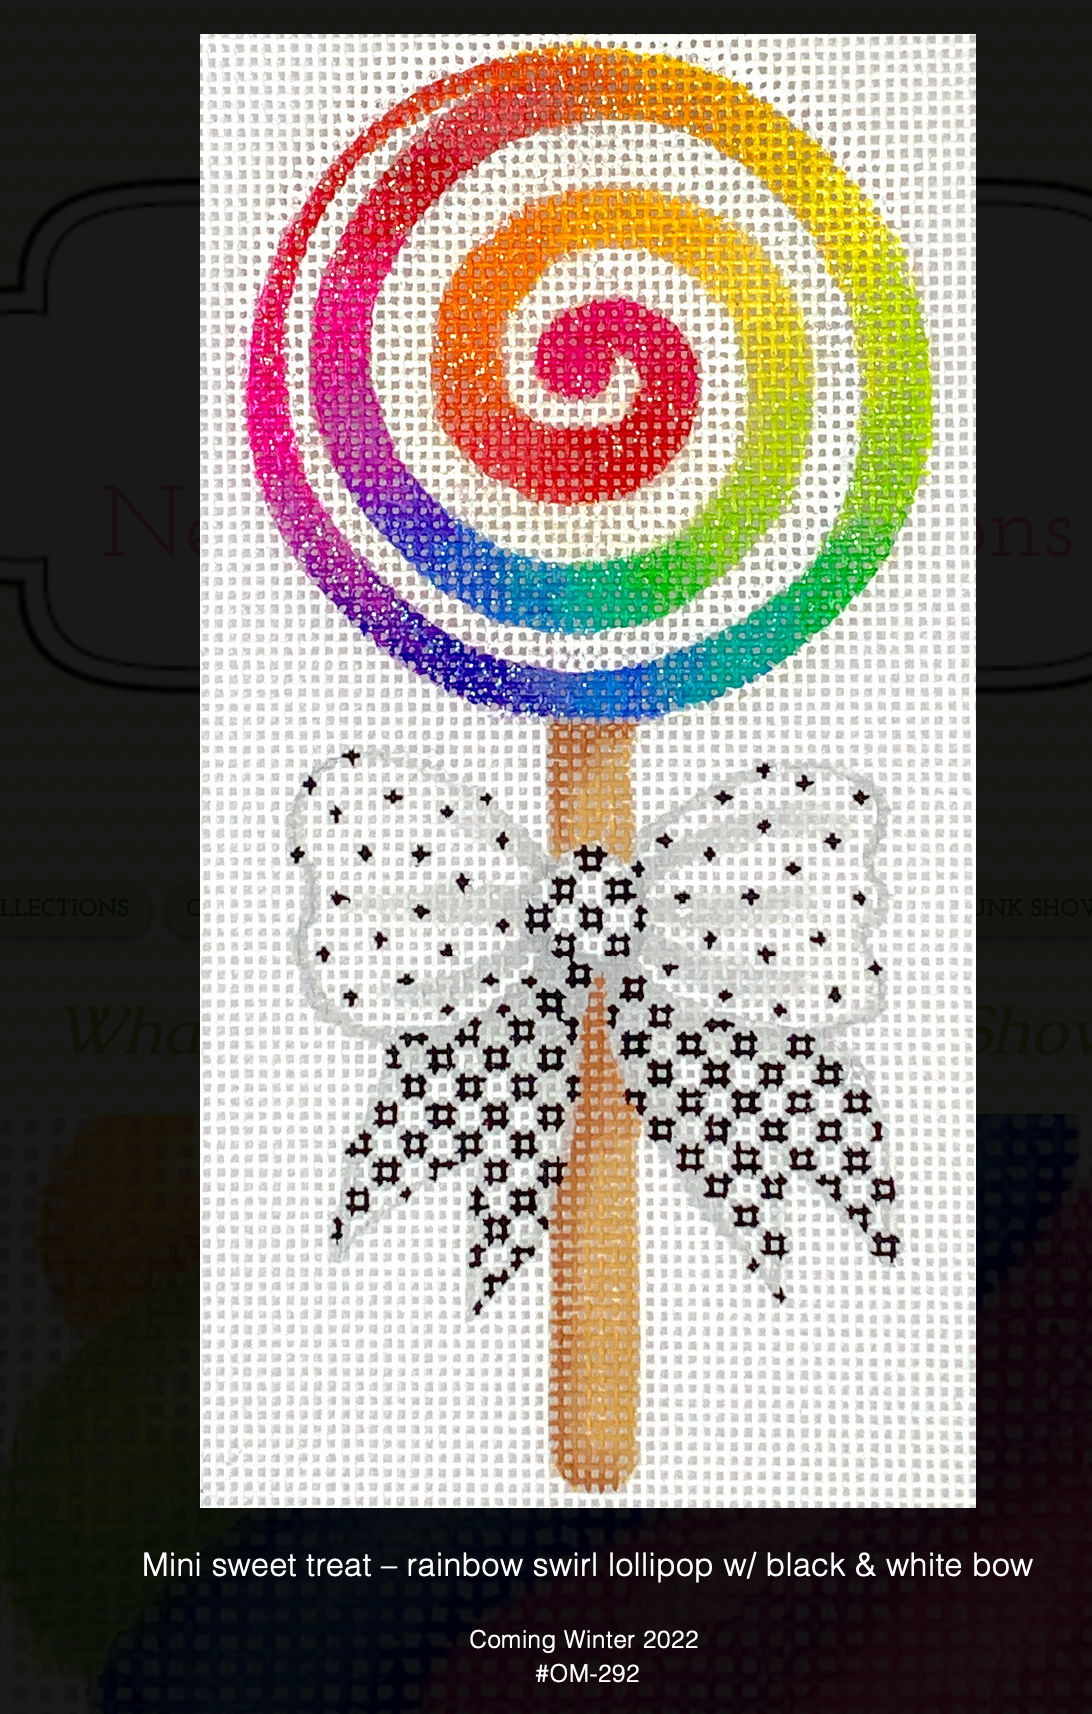 Kate Dickerson OM-292 Rainbow Swirl Lollipop